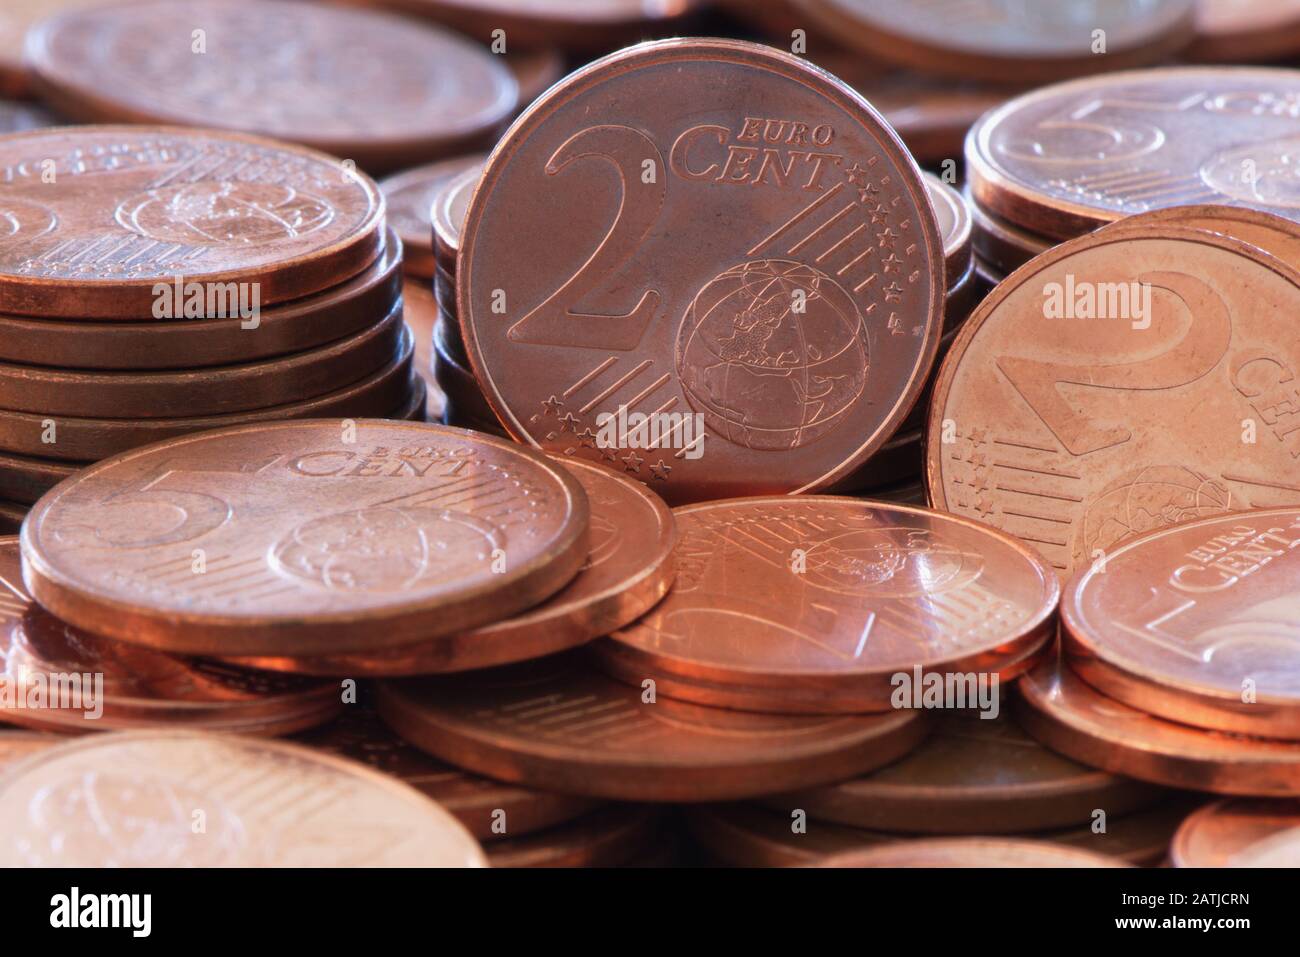 Medienberichten zufolge plant die neue EU-Kommission, alle 1-, 2- und 5-Cent-Münzen abzuschaffen. Stockfoto